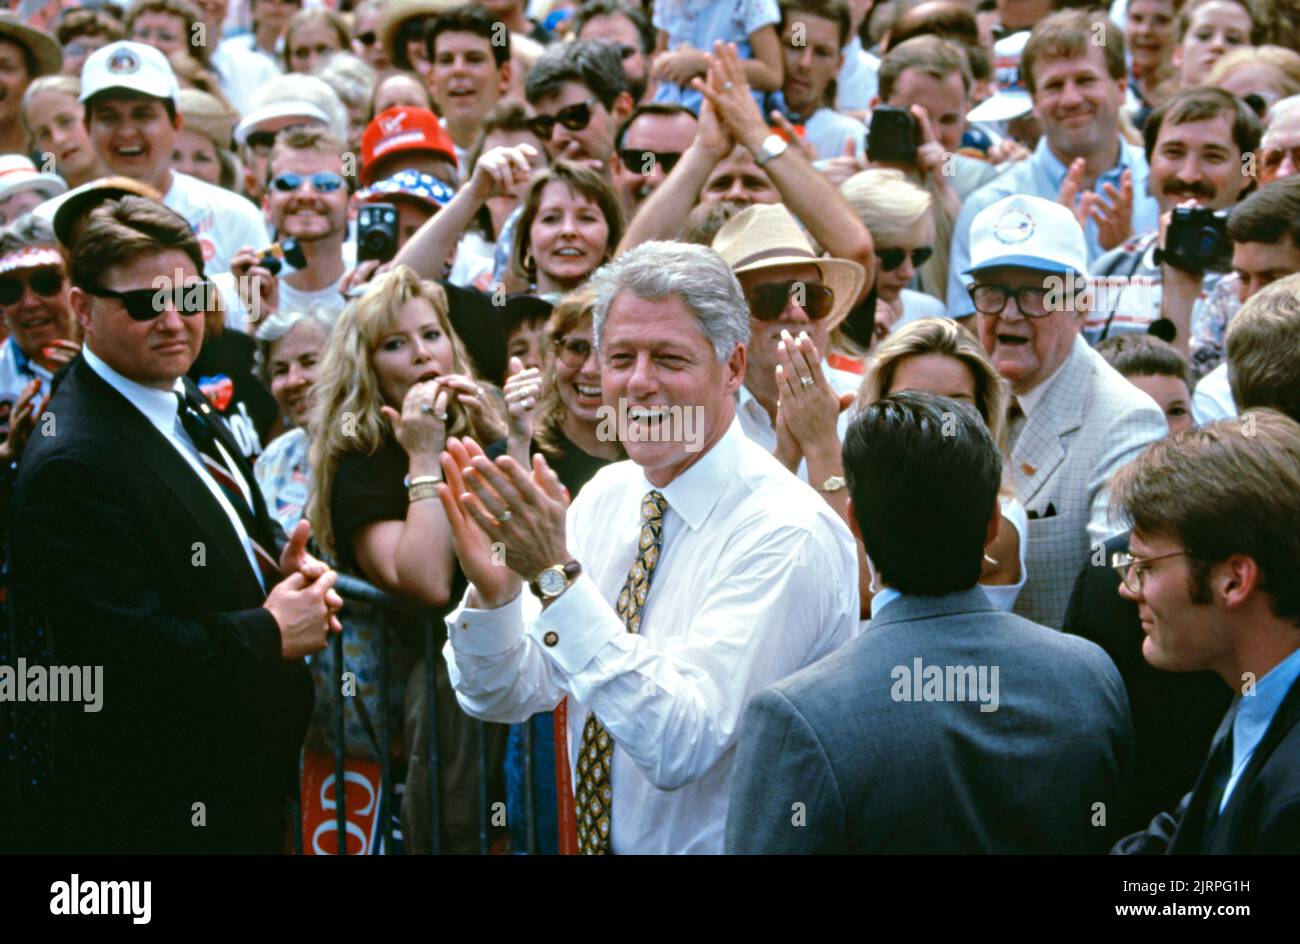 El presidente estadounidense Bill Clinton entra en la multitud para tomar un selfie con muchedumbres de partidarios durante un mitin de campaña en las afueras de la Biblioteca Pública de Stafford, 30 de agosto de 1996 en El Cairo, Illinois. Clinton se detuvo en la comunidad agrícola del sur de Illinois en su gira en autobús de campaña llamado el puente al siglo 21st. Foto de stock